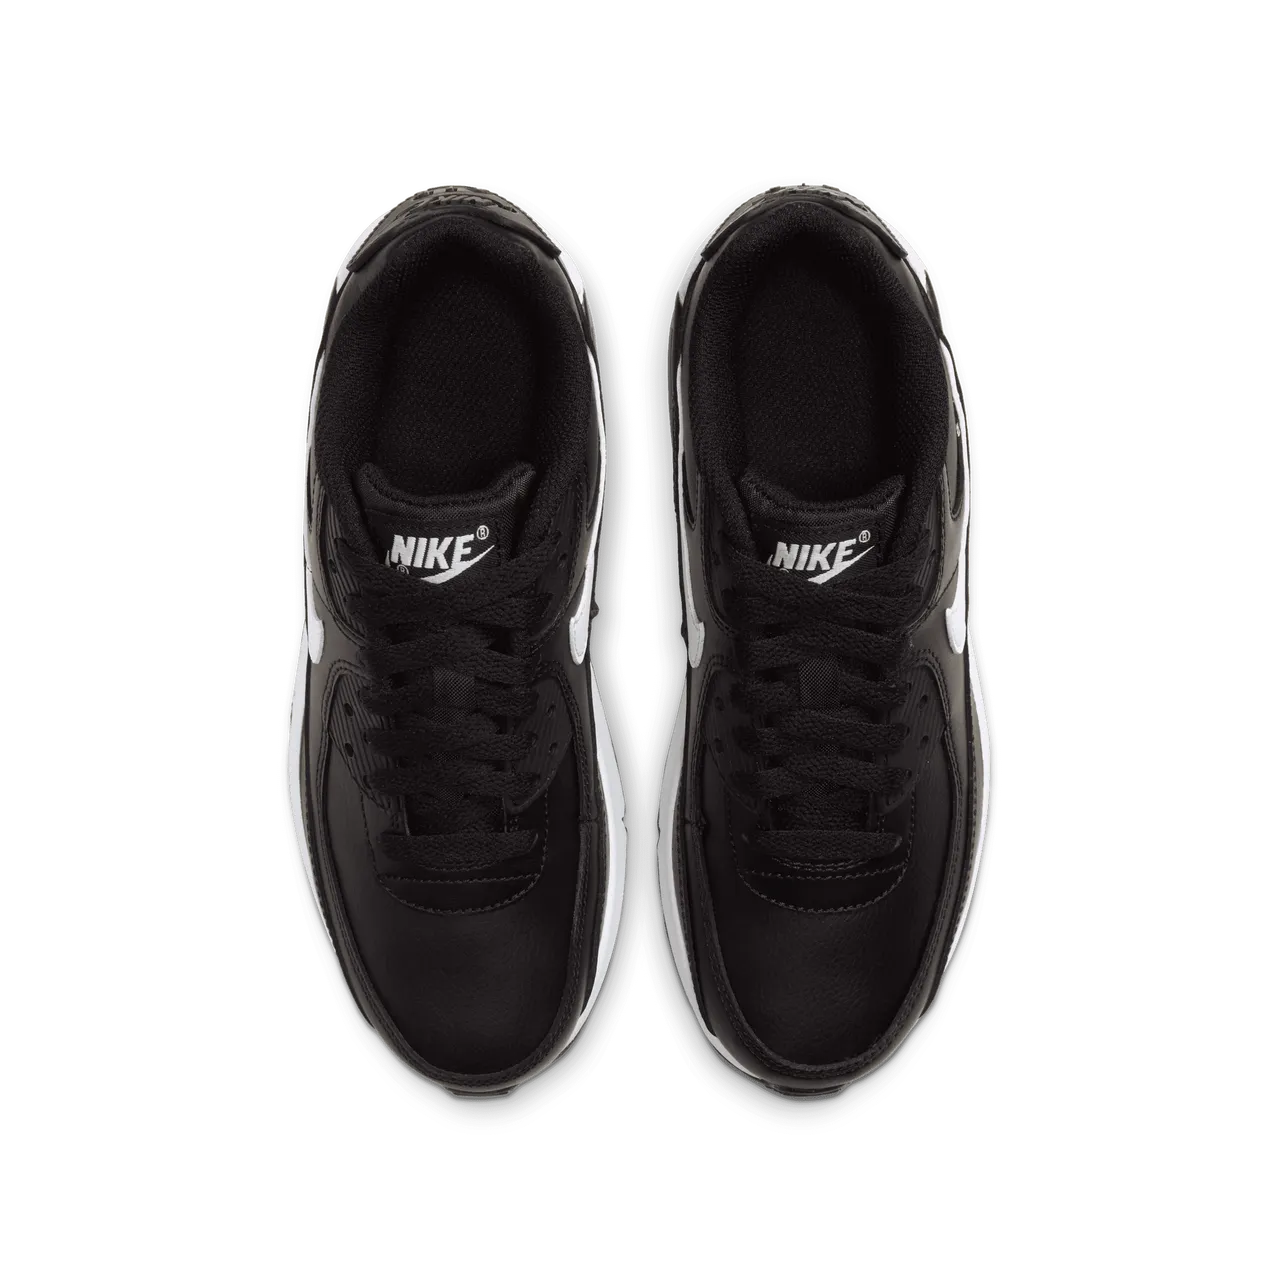 Nike Air Max 90 LTR Kinderschoenen - Zwart